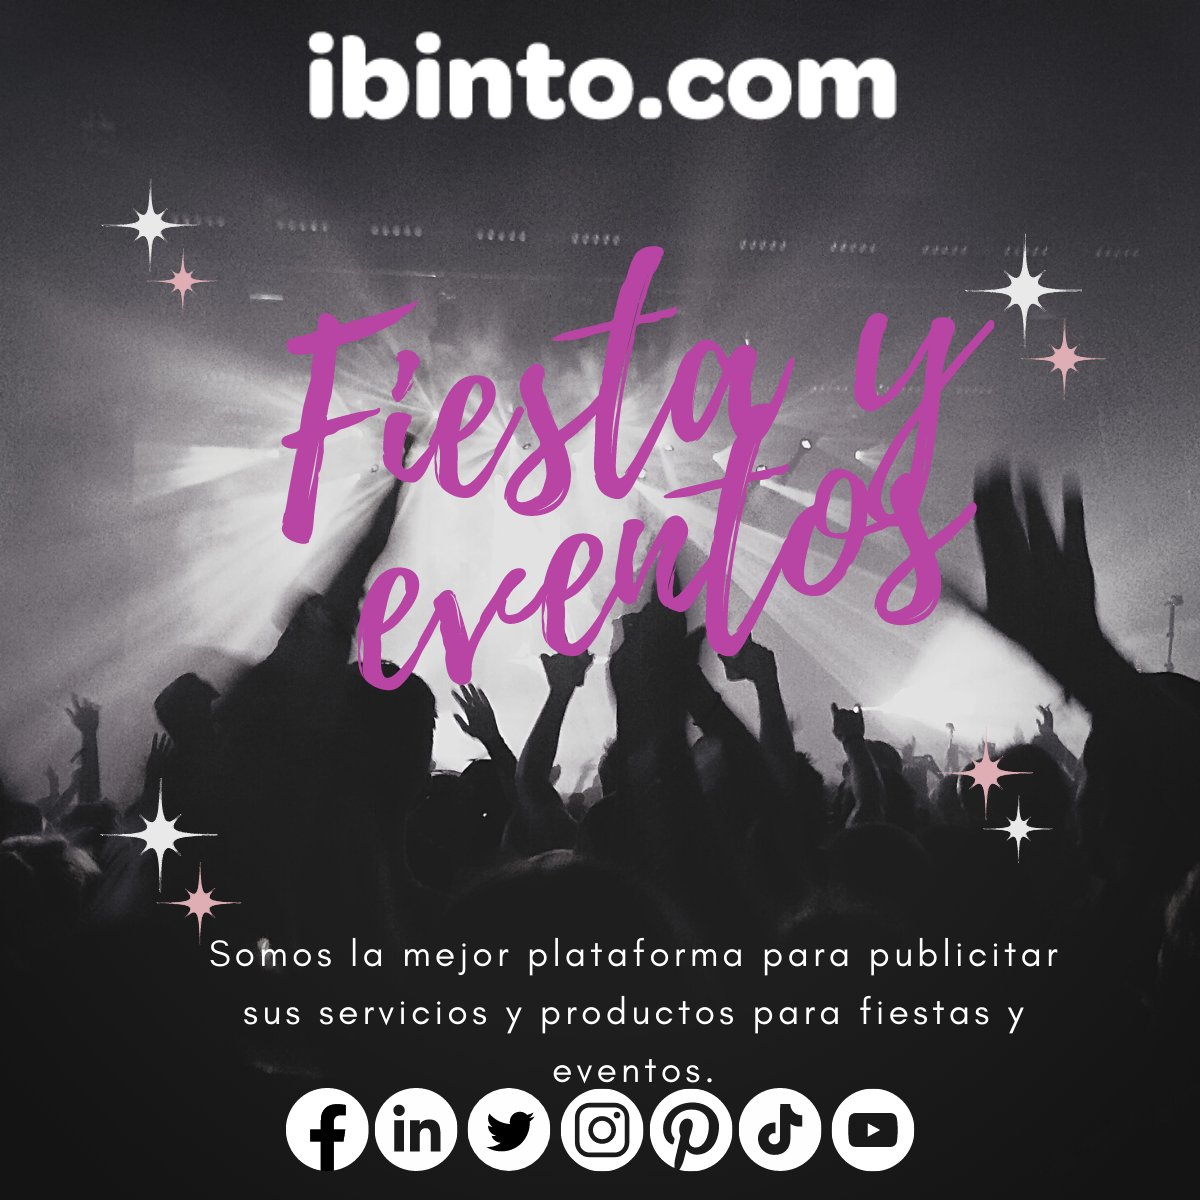 Plataforma para elegir proveedores para tus fiestas y eventos.

#Ibinto #Eventos #Proveedores #Fotografía #SalonesDeFiestas #JardinesDeFiestas #EventosSociales #EventosCorporativos #EventosEmpresariales #TurismoDeReuniones #Bodas #Hoteles #Fiestas #Turismo #México